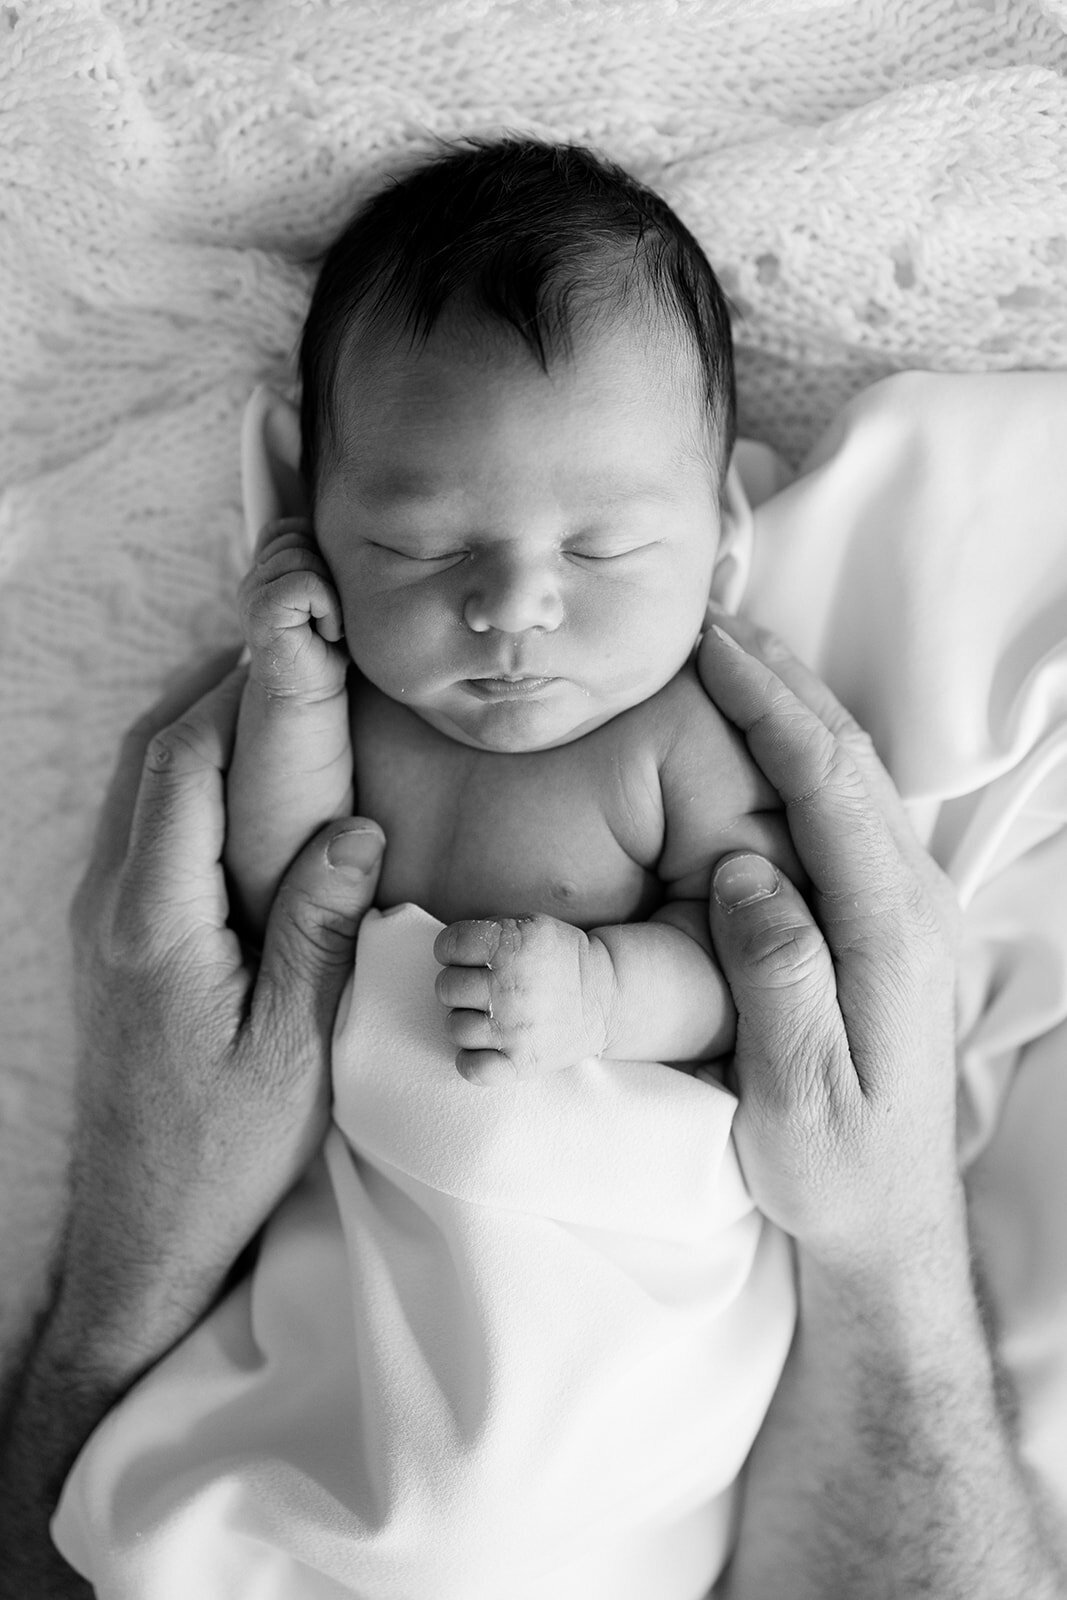 black and white newborn baby portrait in blanket